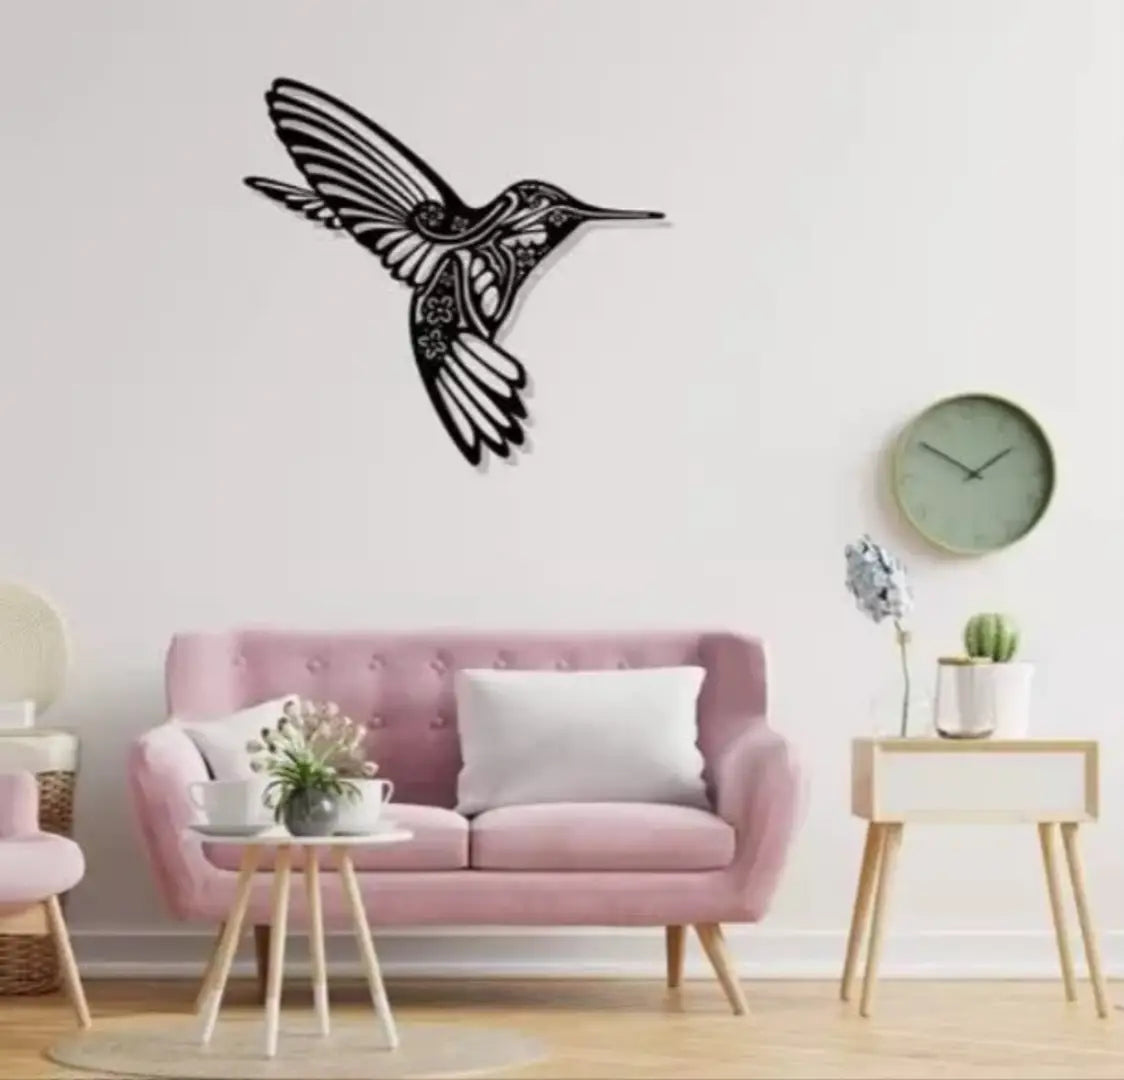 Bird wall design wooden decor